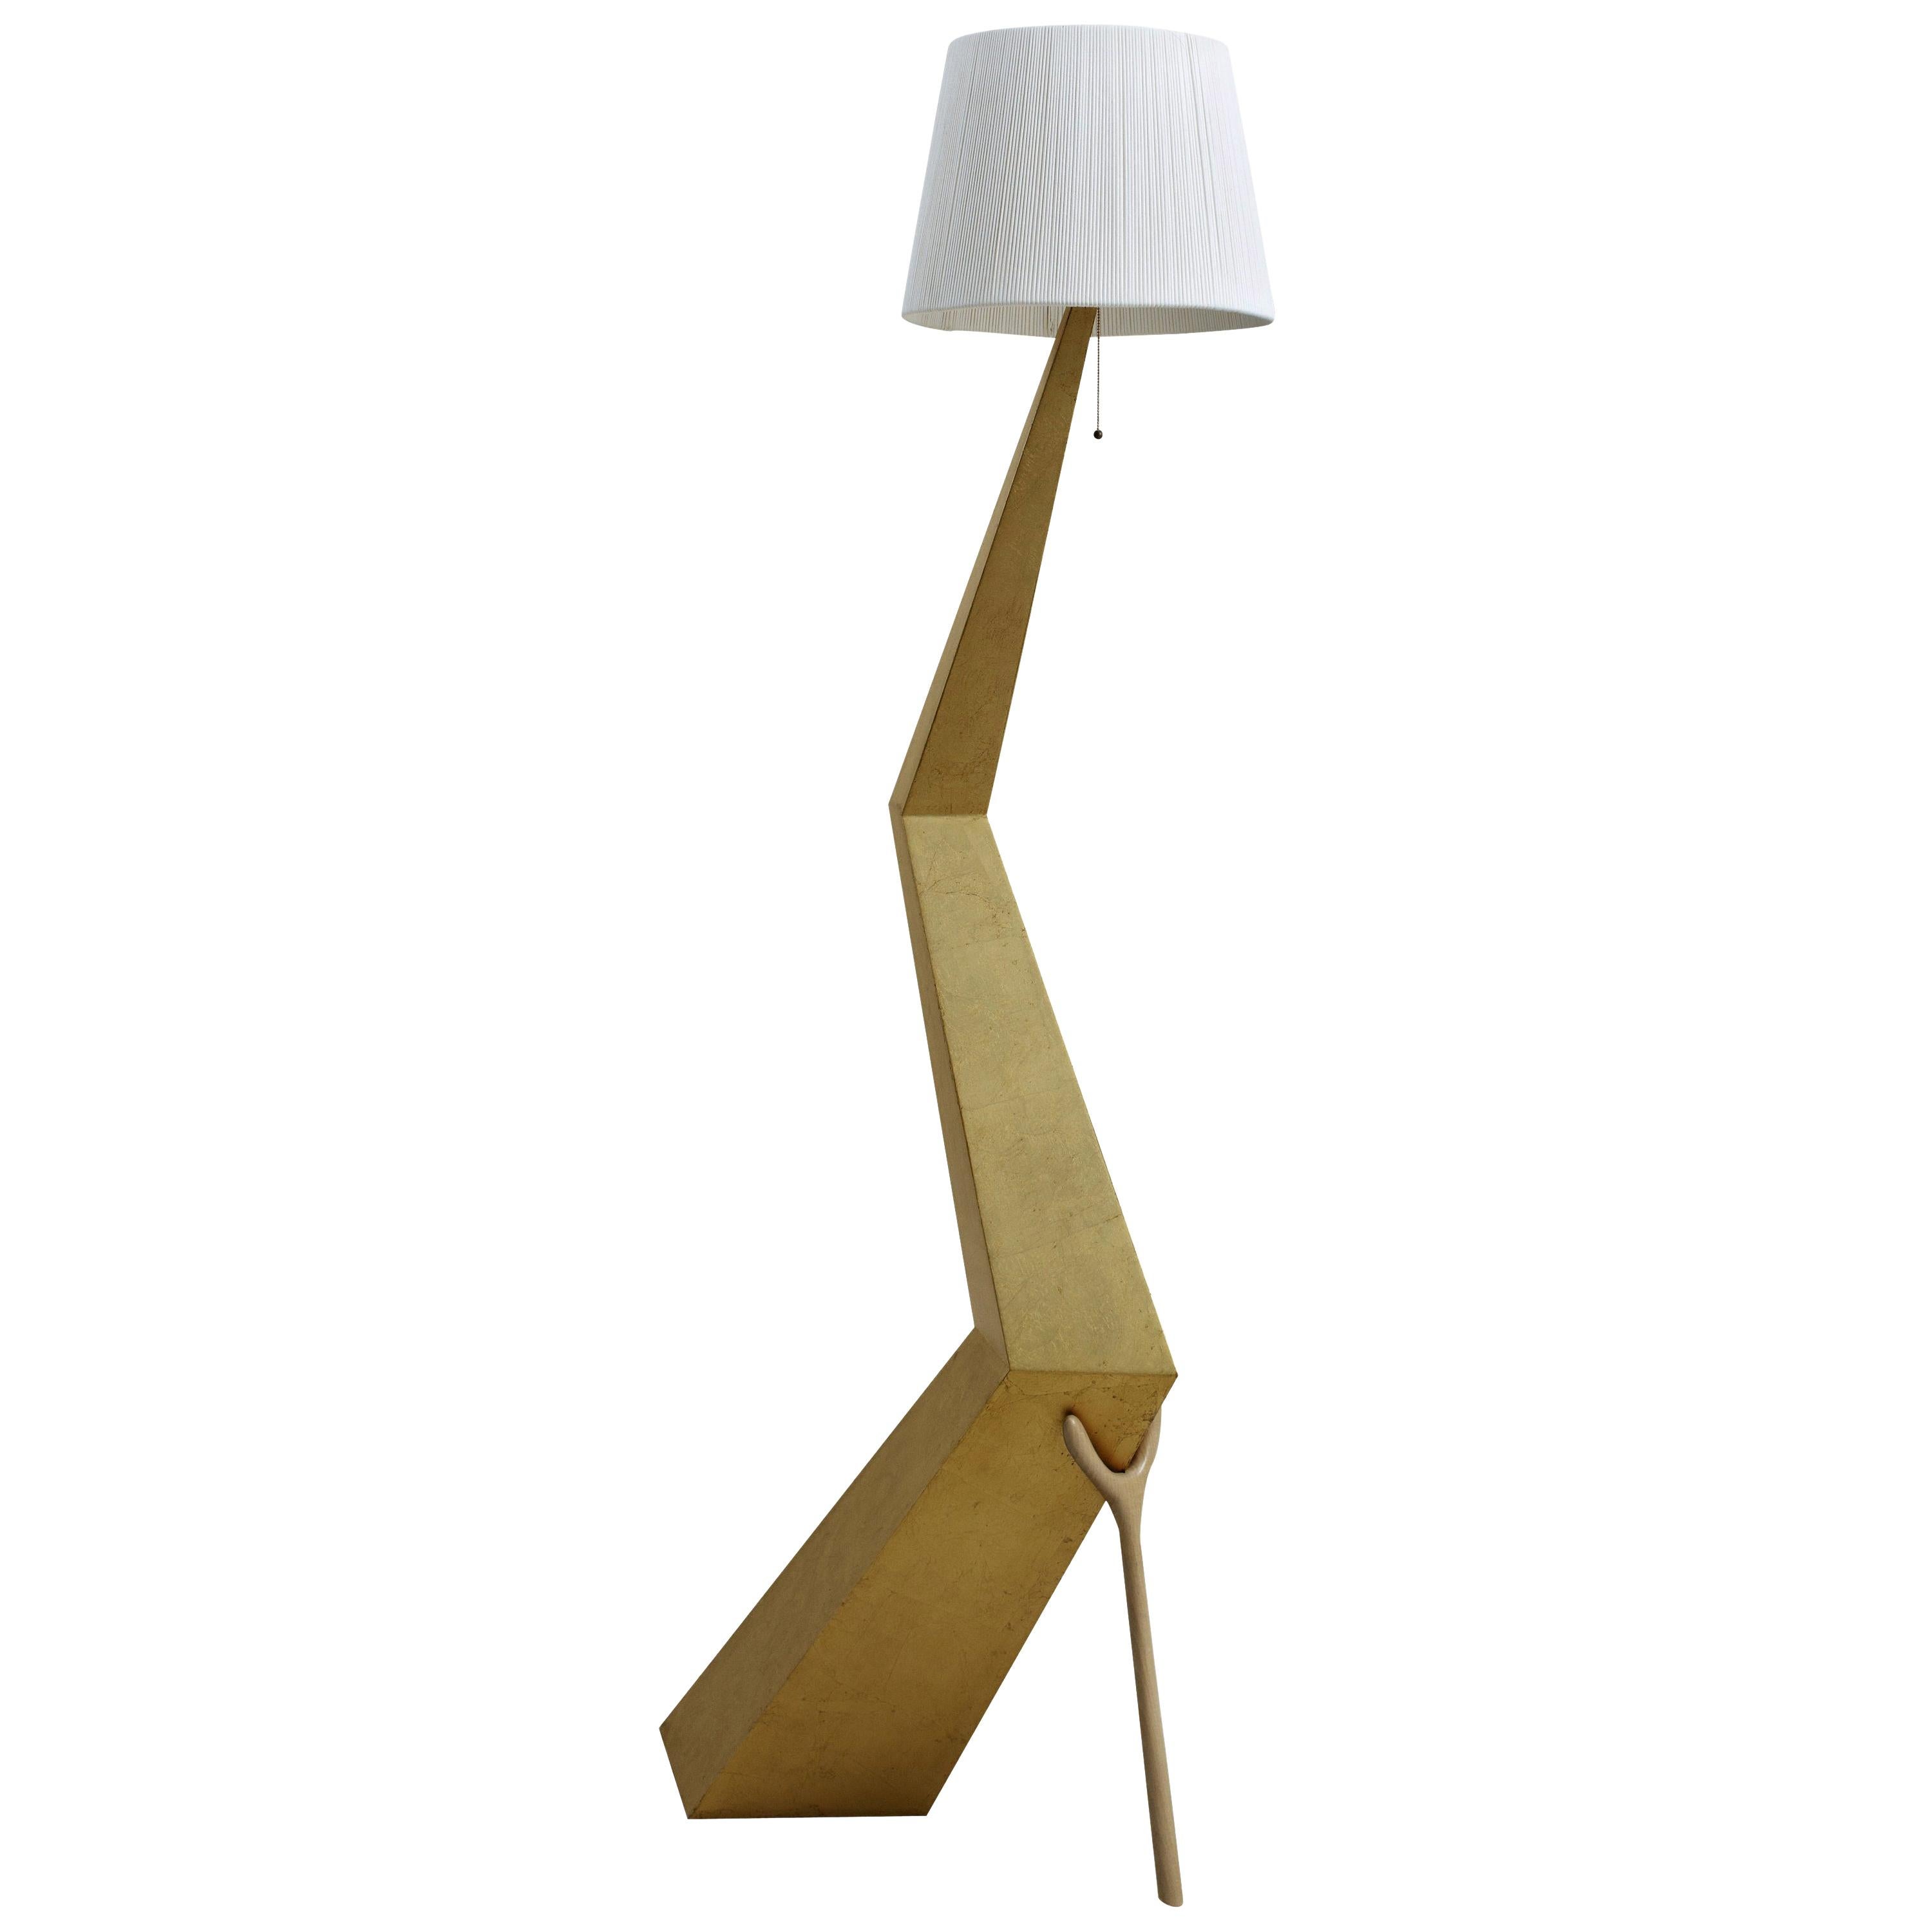 Lampe Braceli conçue par Salvador Dali et fabriquée par BD furniture à Barcelone.

Bracelli
Structure du panneau recouverte d'une peinture polyester argentée (feuille d'or fin).
Abat-jour en coton et rayonne ivoire. 

Mesures : 37 x 64 x 180 H.